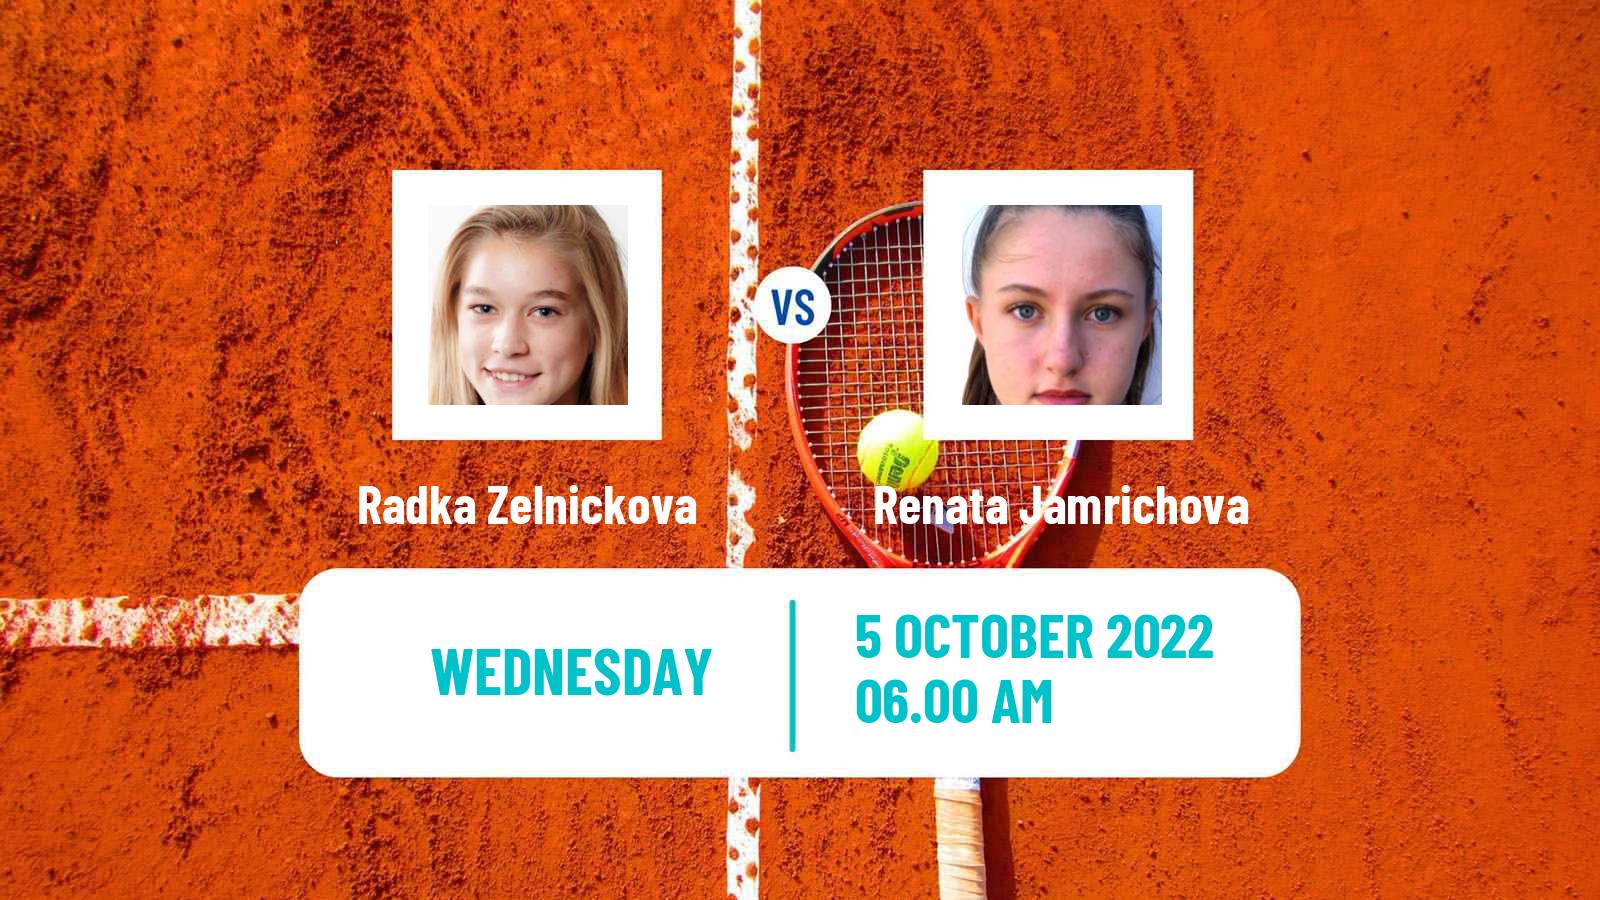 Tennis ITF Tournaments Radka Zelnickova - Renata Jamrichova